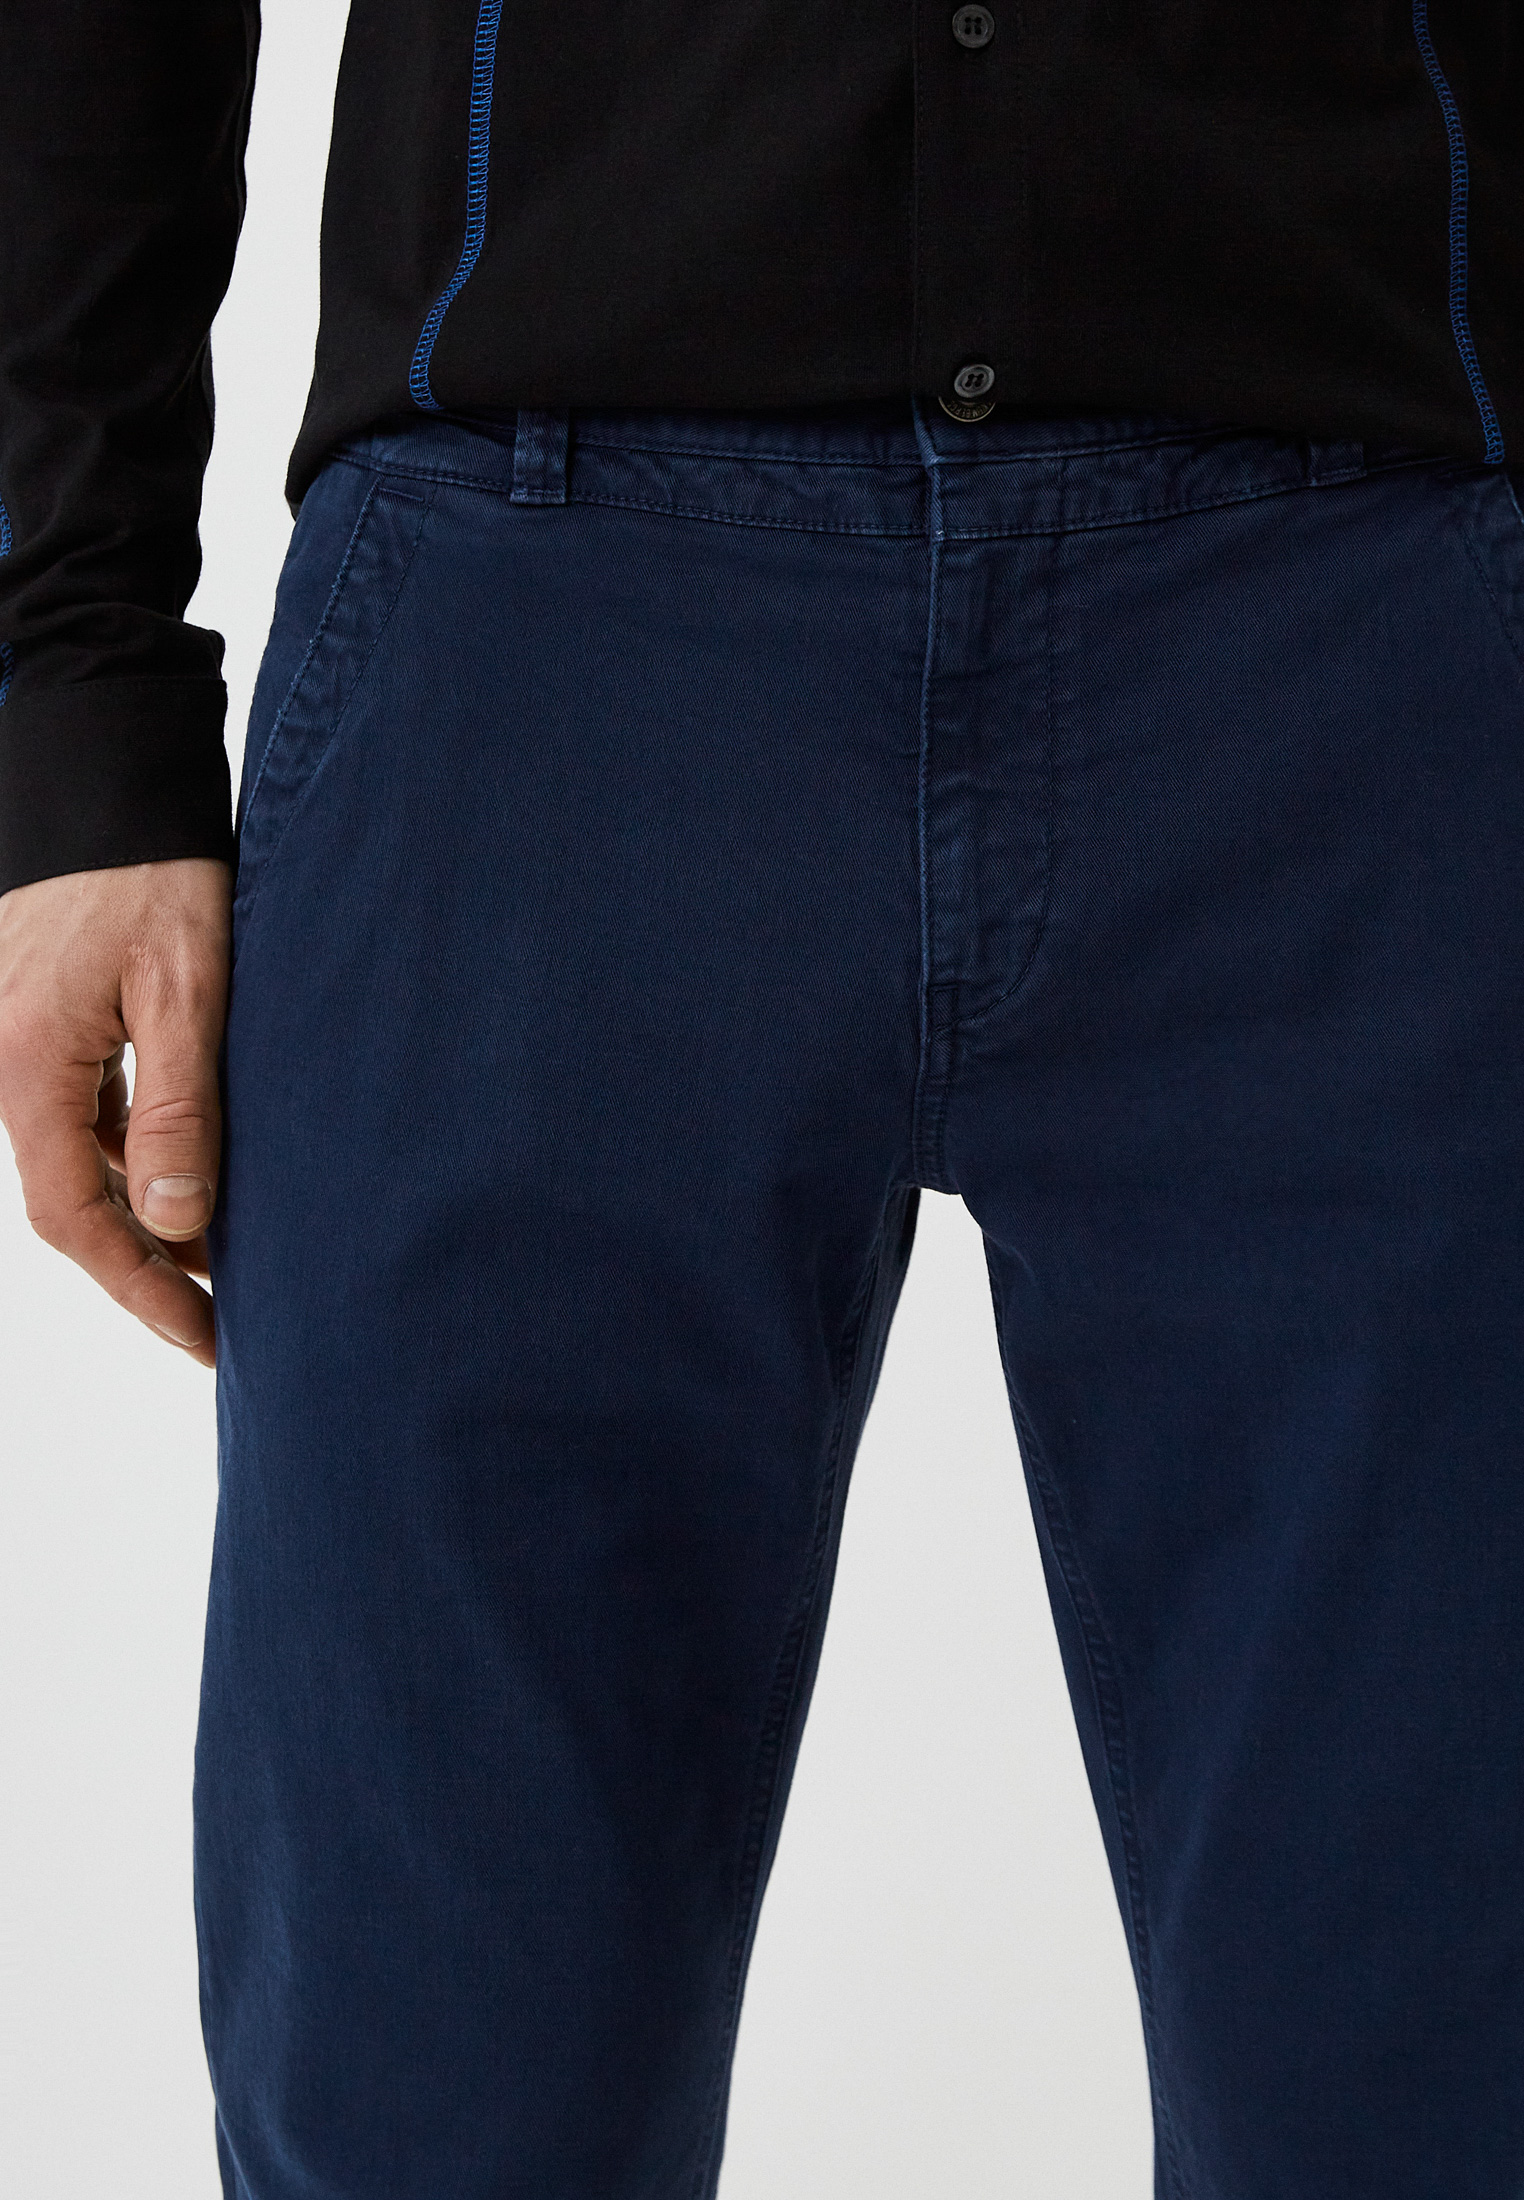 Мужские повседневные брюки Bikkembergs (Биккембергс) C P 111 00 S 3394: изображение 8